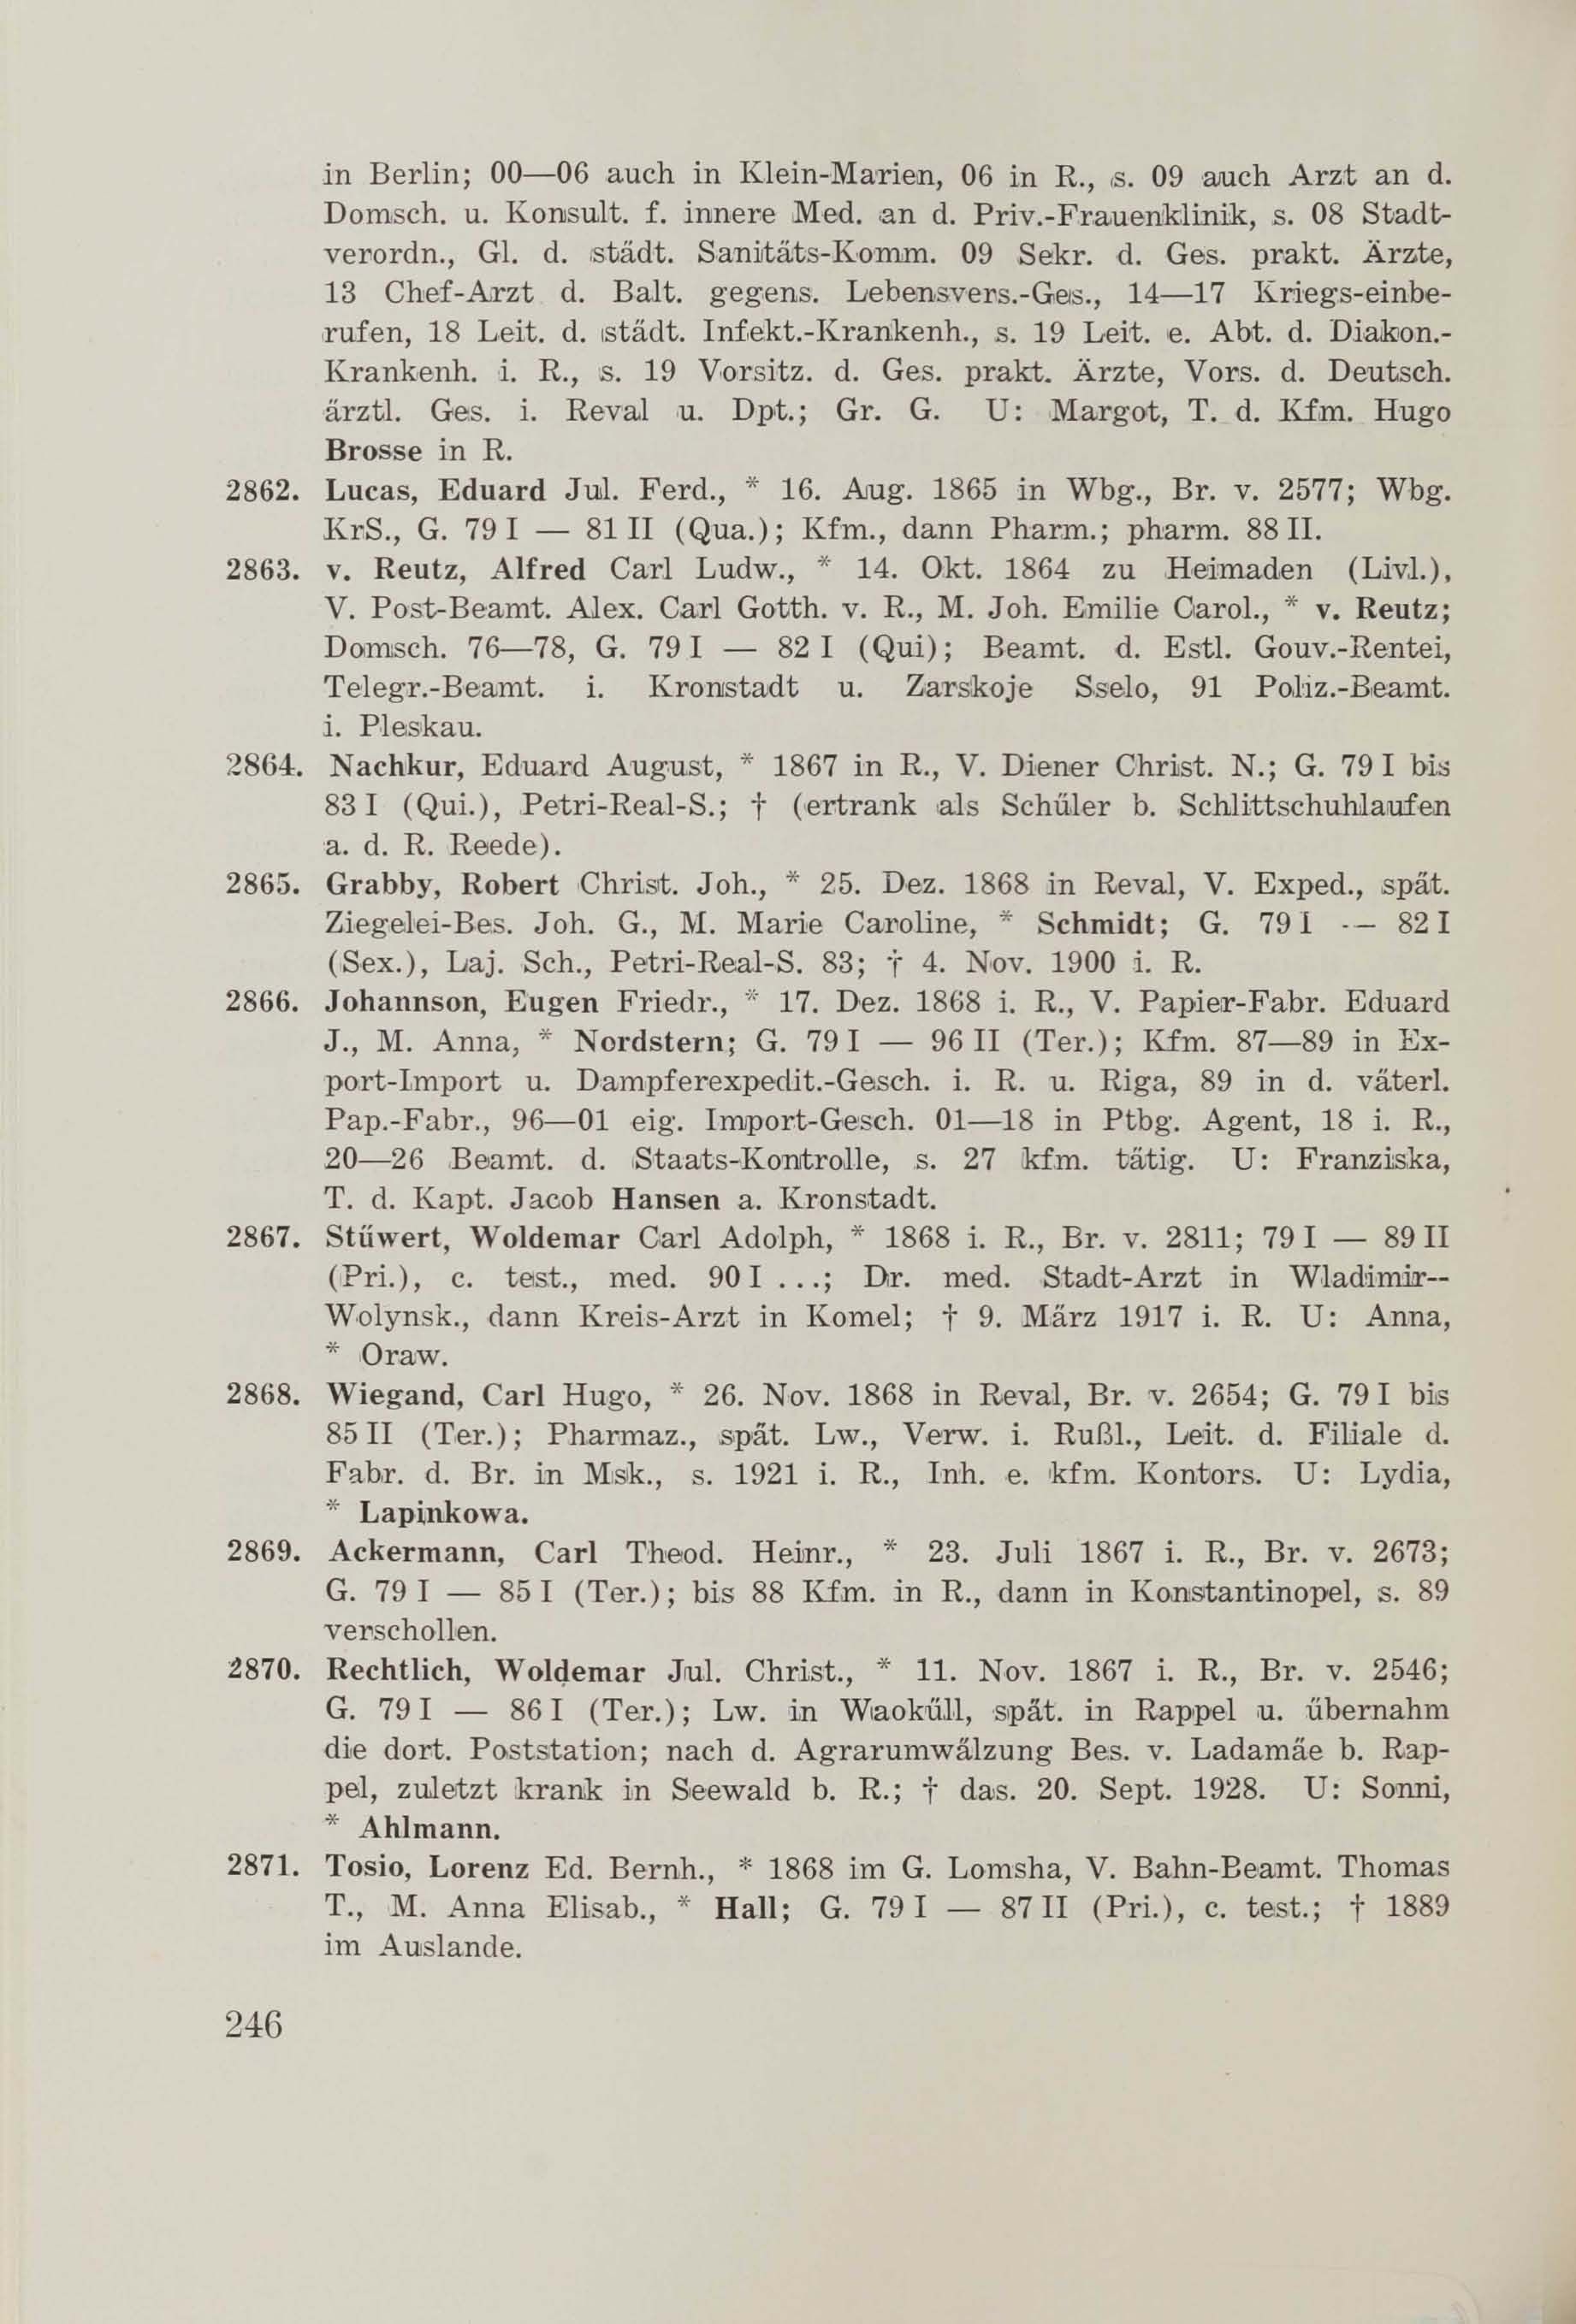 Schüler-Verzeichnis des Revalschen Gouvernements-Gymnasiums 1805–1890 (1931) | 256. (246) Main body of text